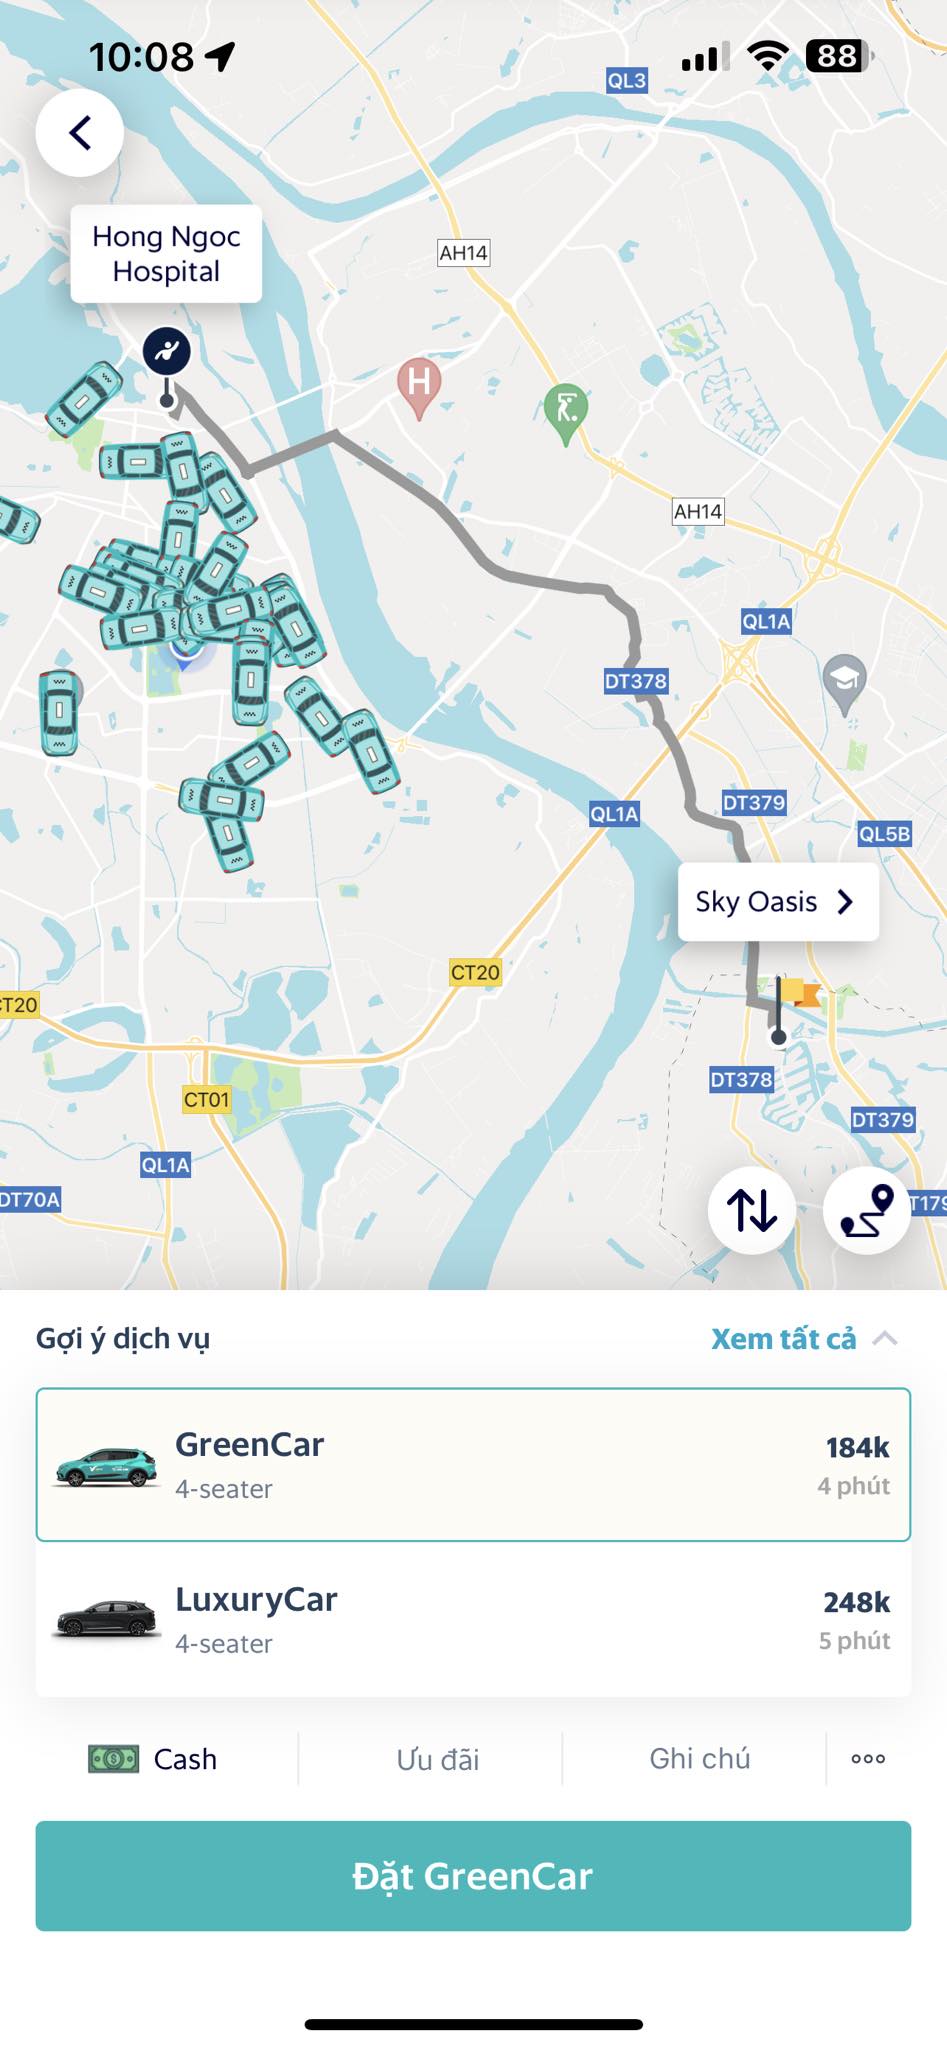 Cảm nhận của khách hàng sau một tuần trải nghiệm taxi xanh VinFast taxi-xanh-01.jpeg